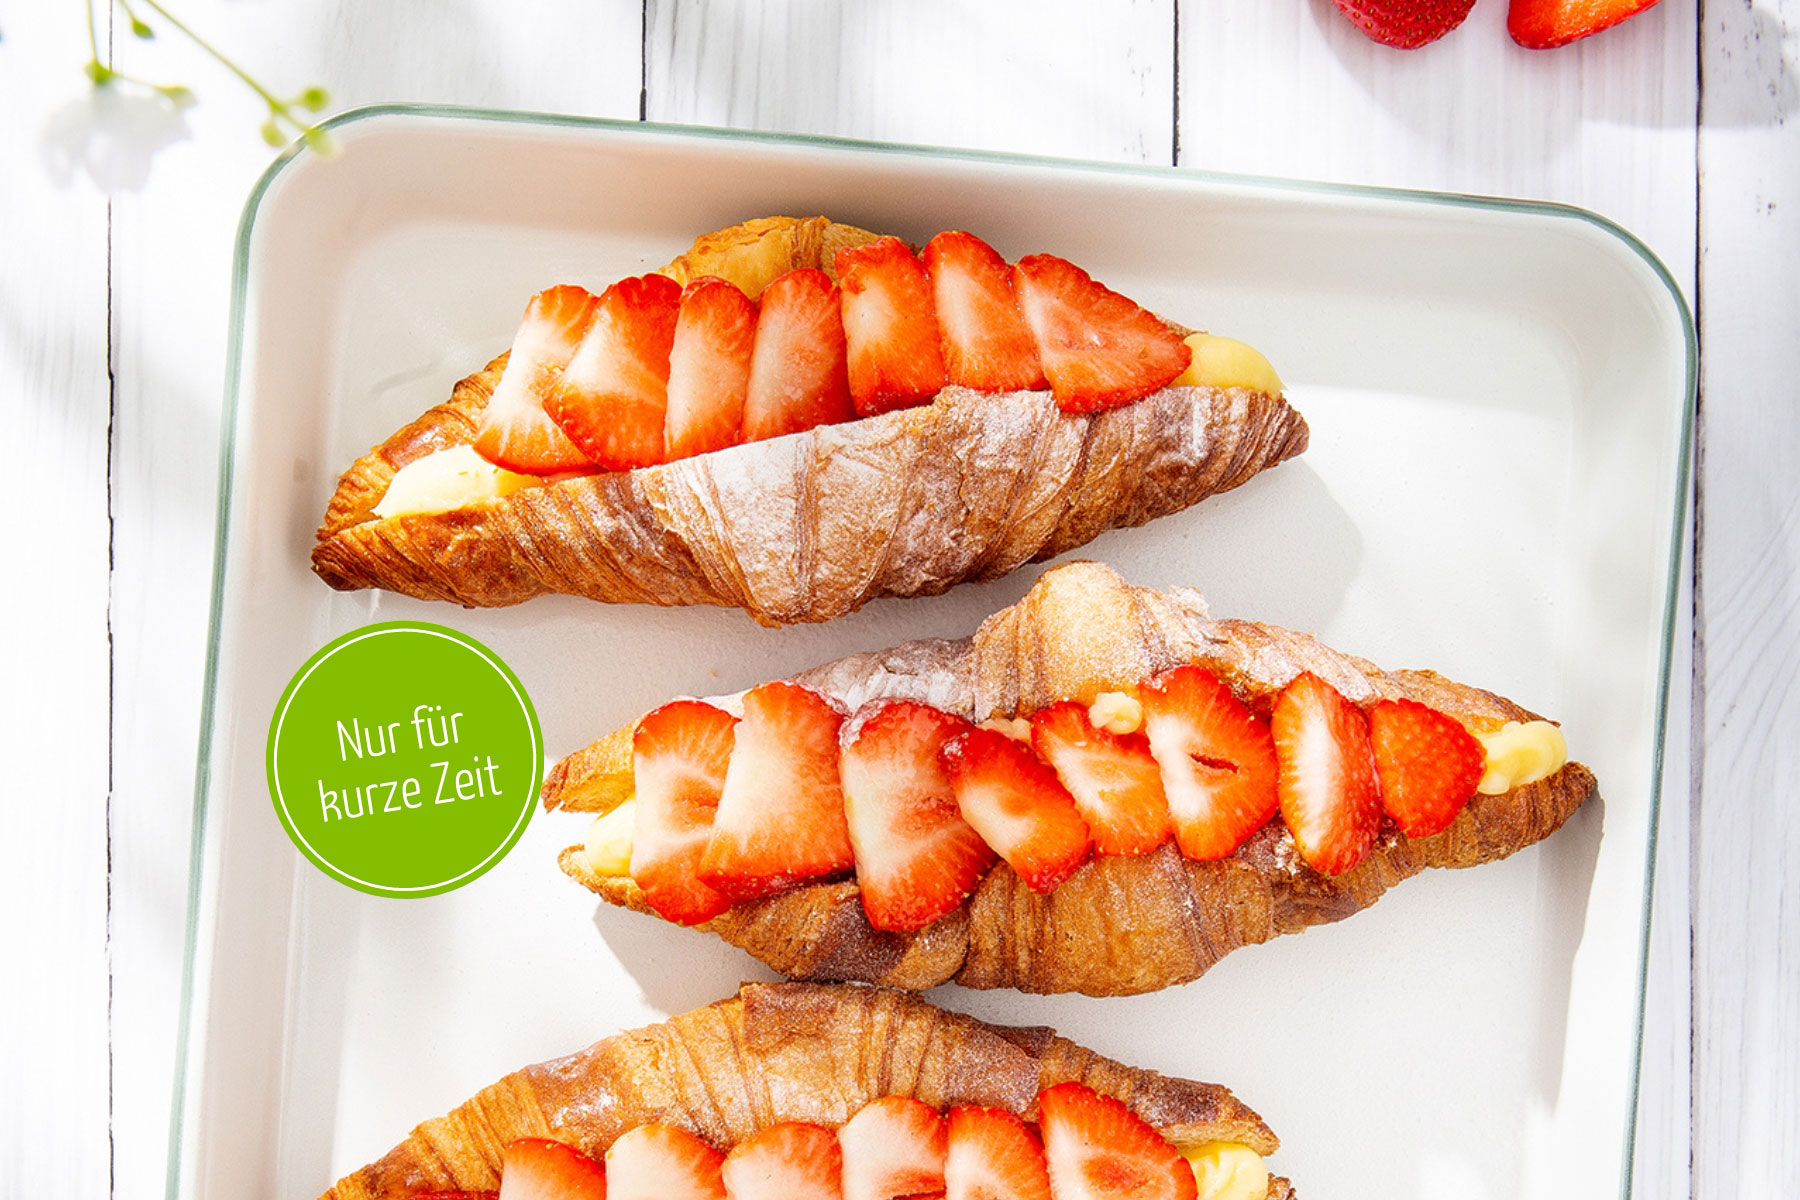 ERDBEERZEIT: Probier unser Erdbeer-Croissant und geniesse das fruchtig-süsse Geschmackserlebnis.